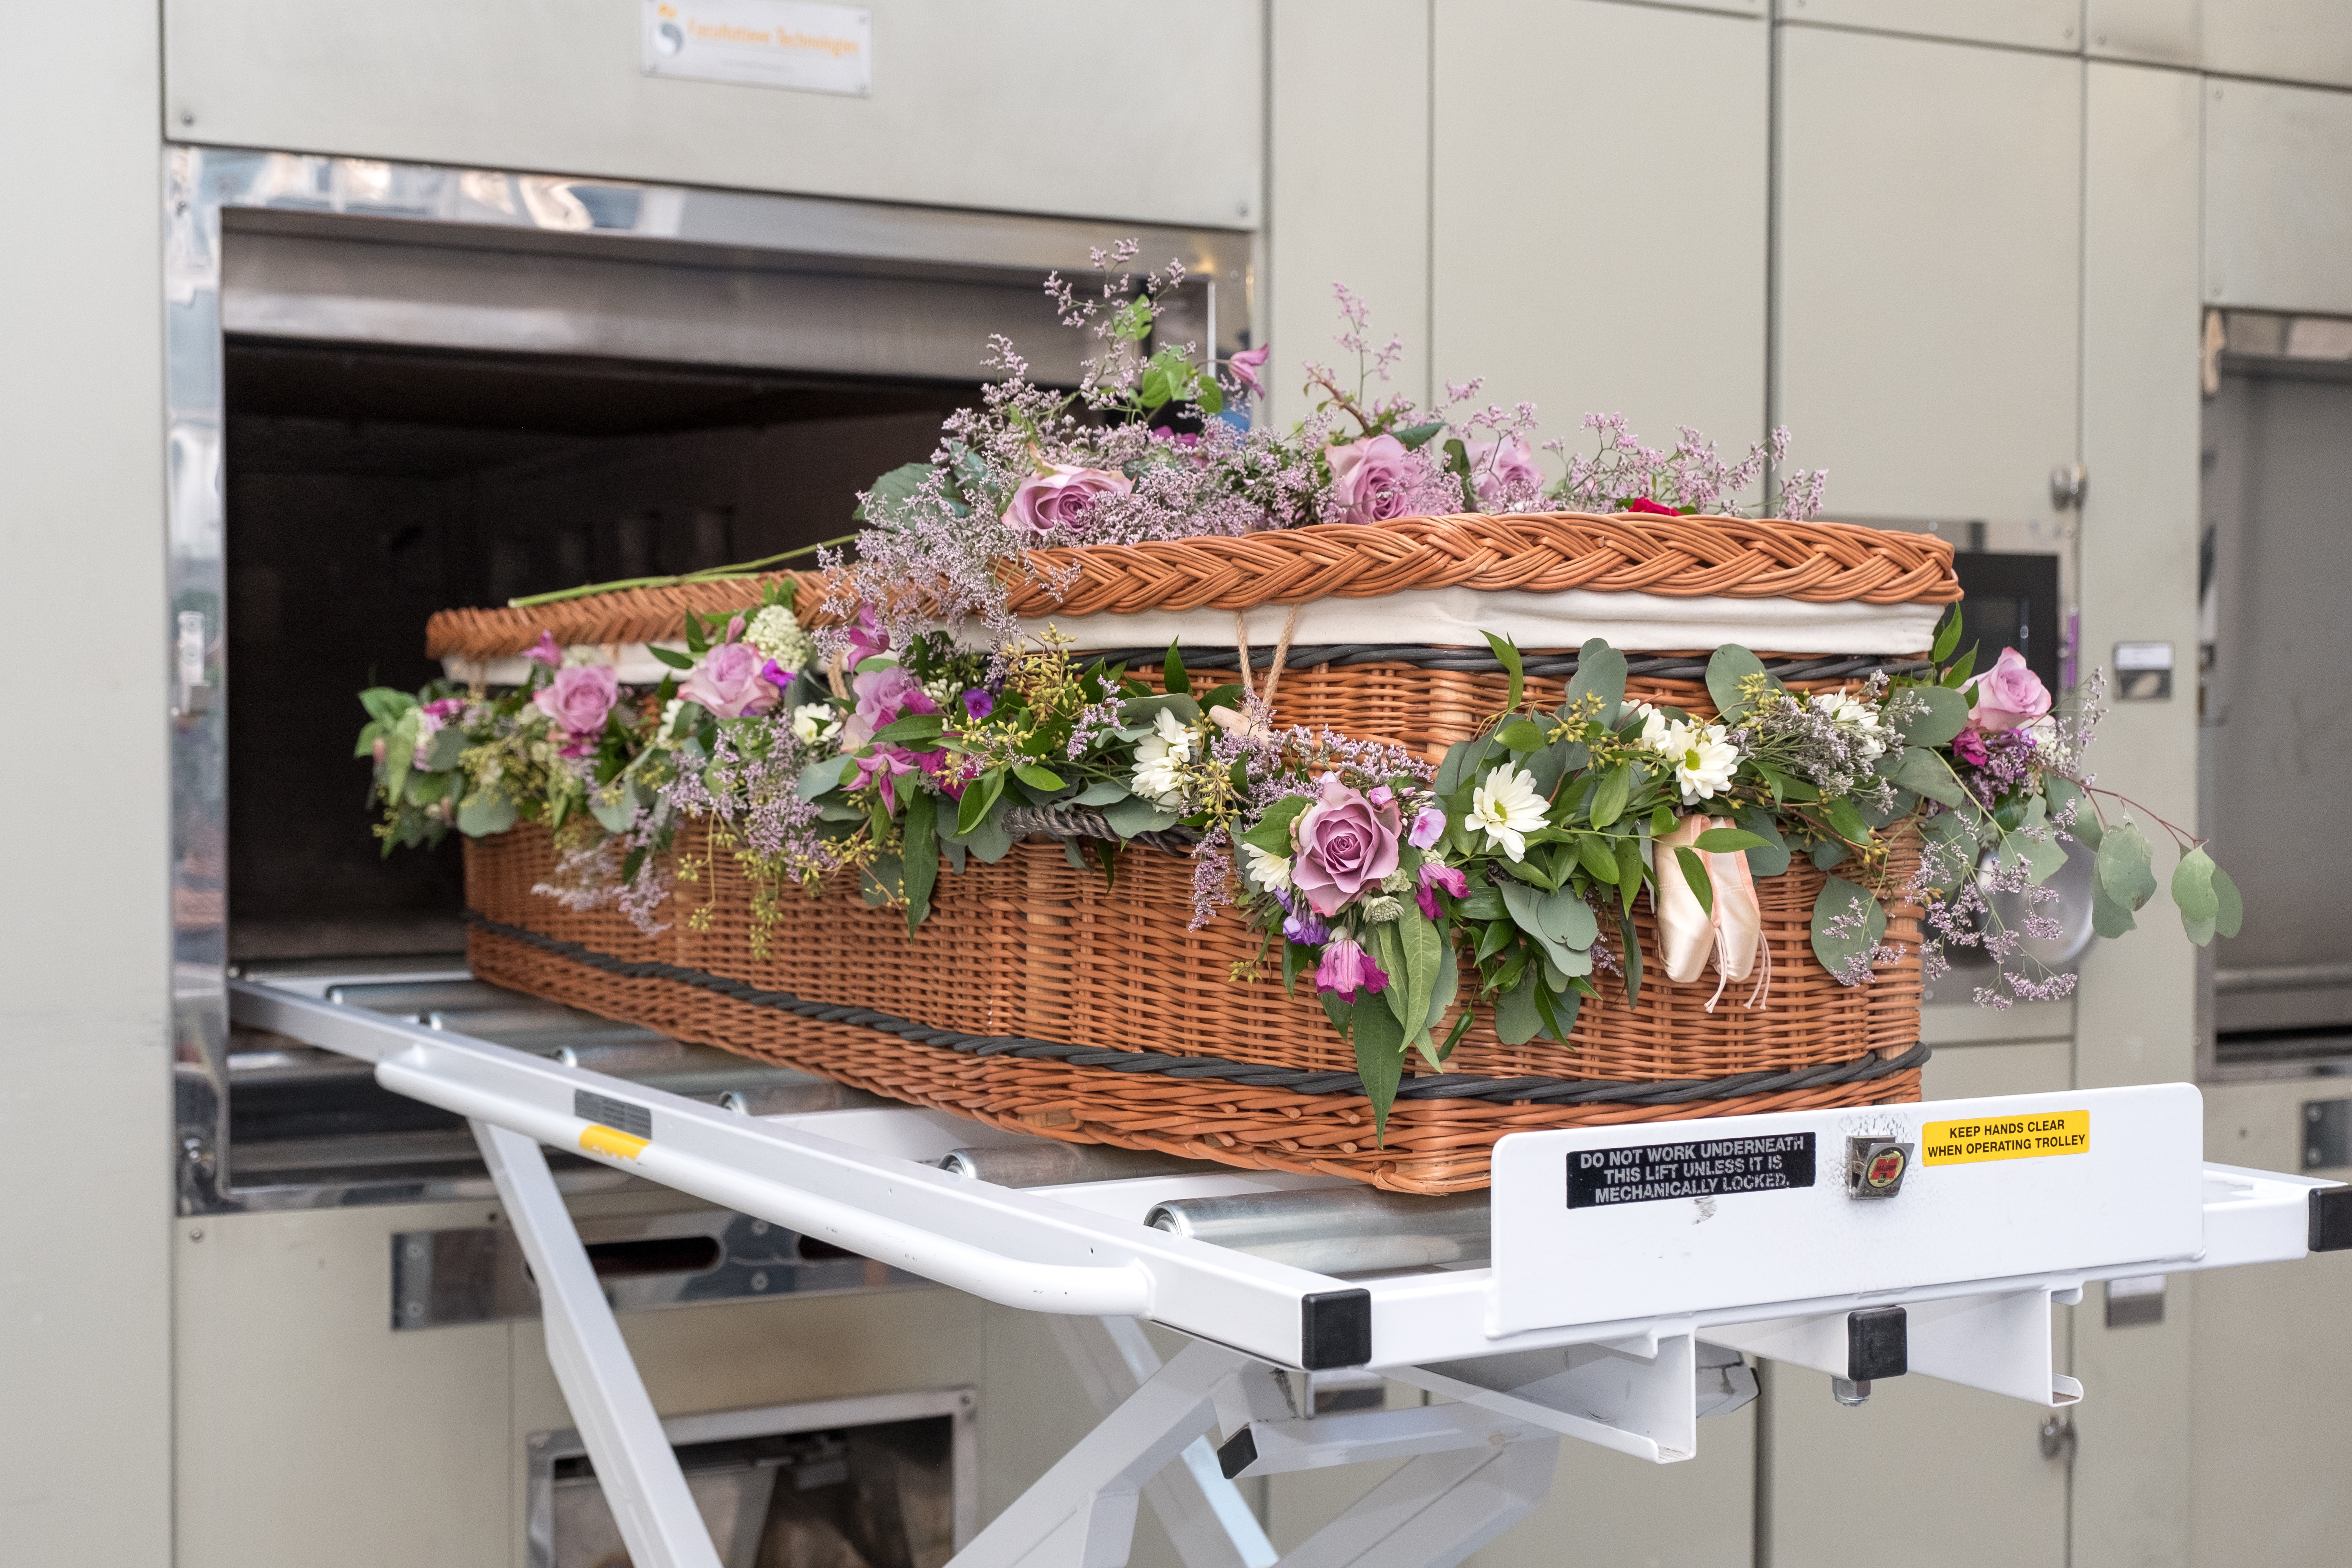 Was passiert mit dem Körper im Krematorium?